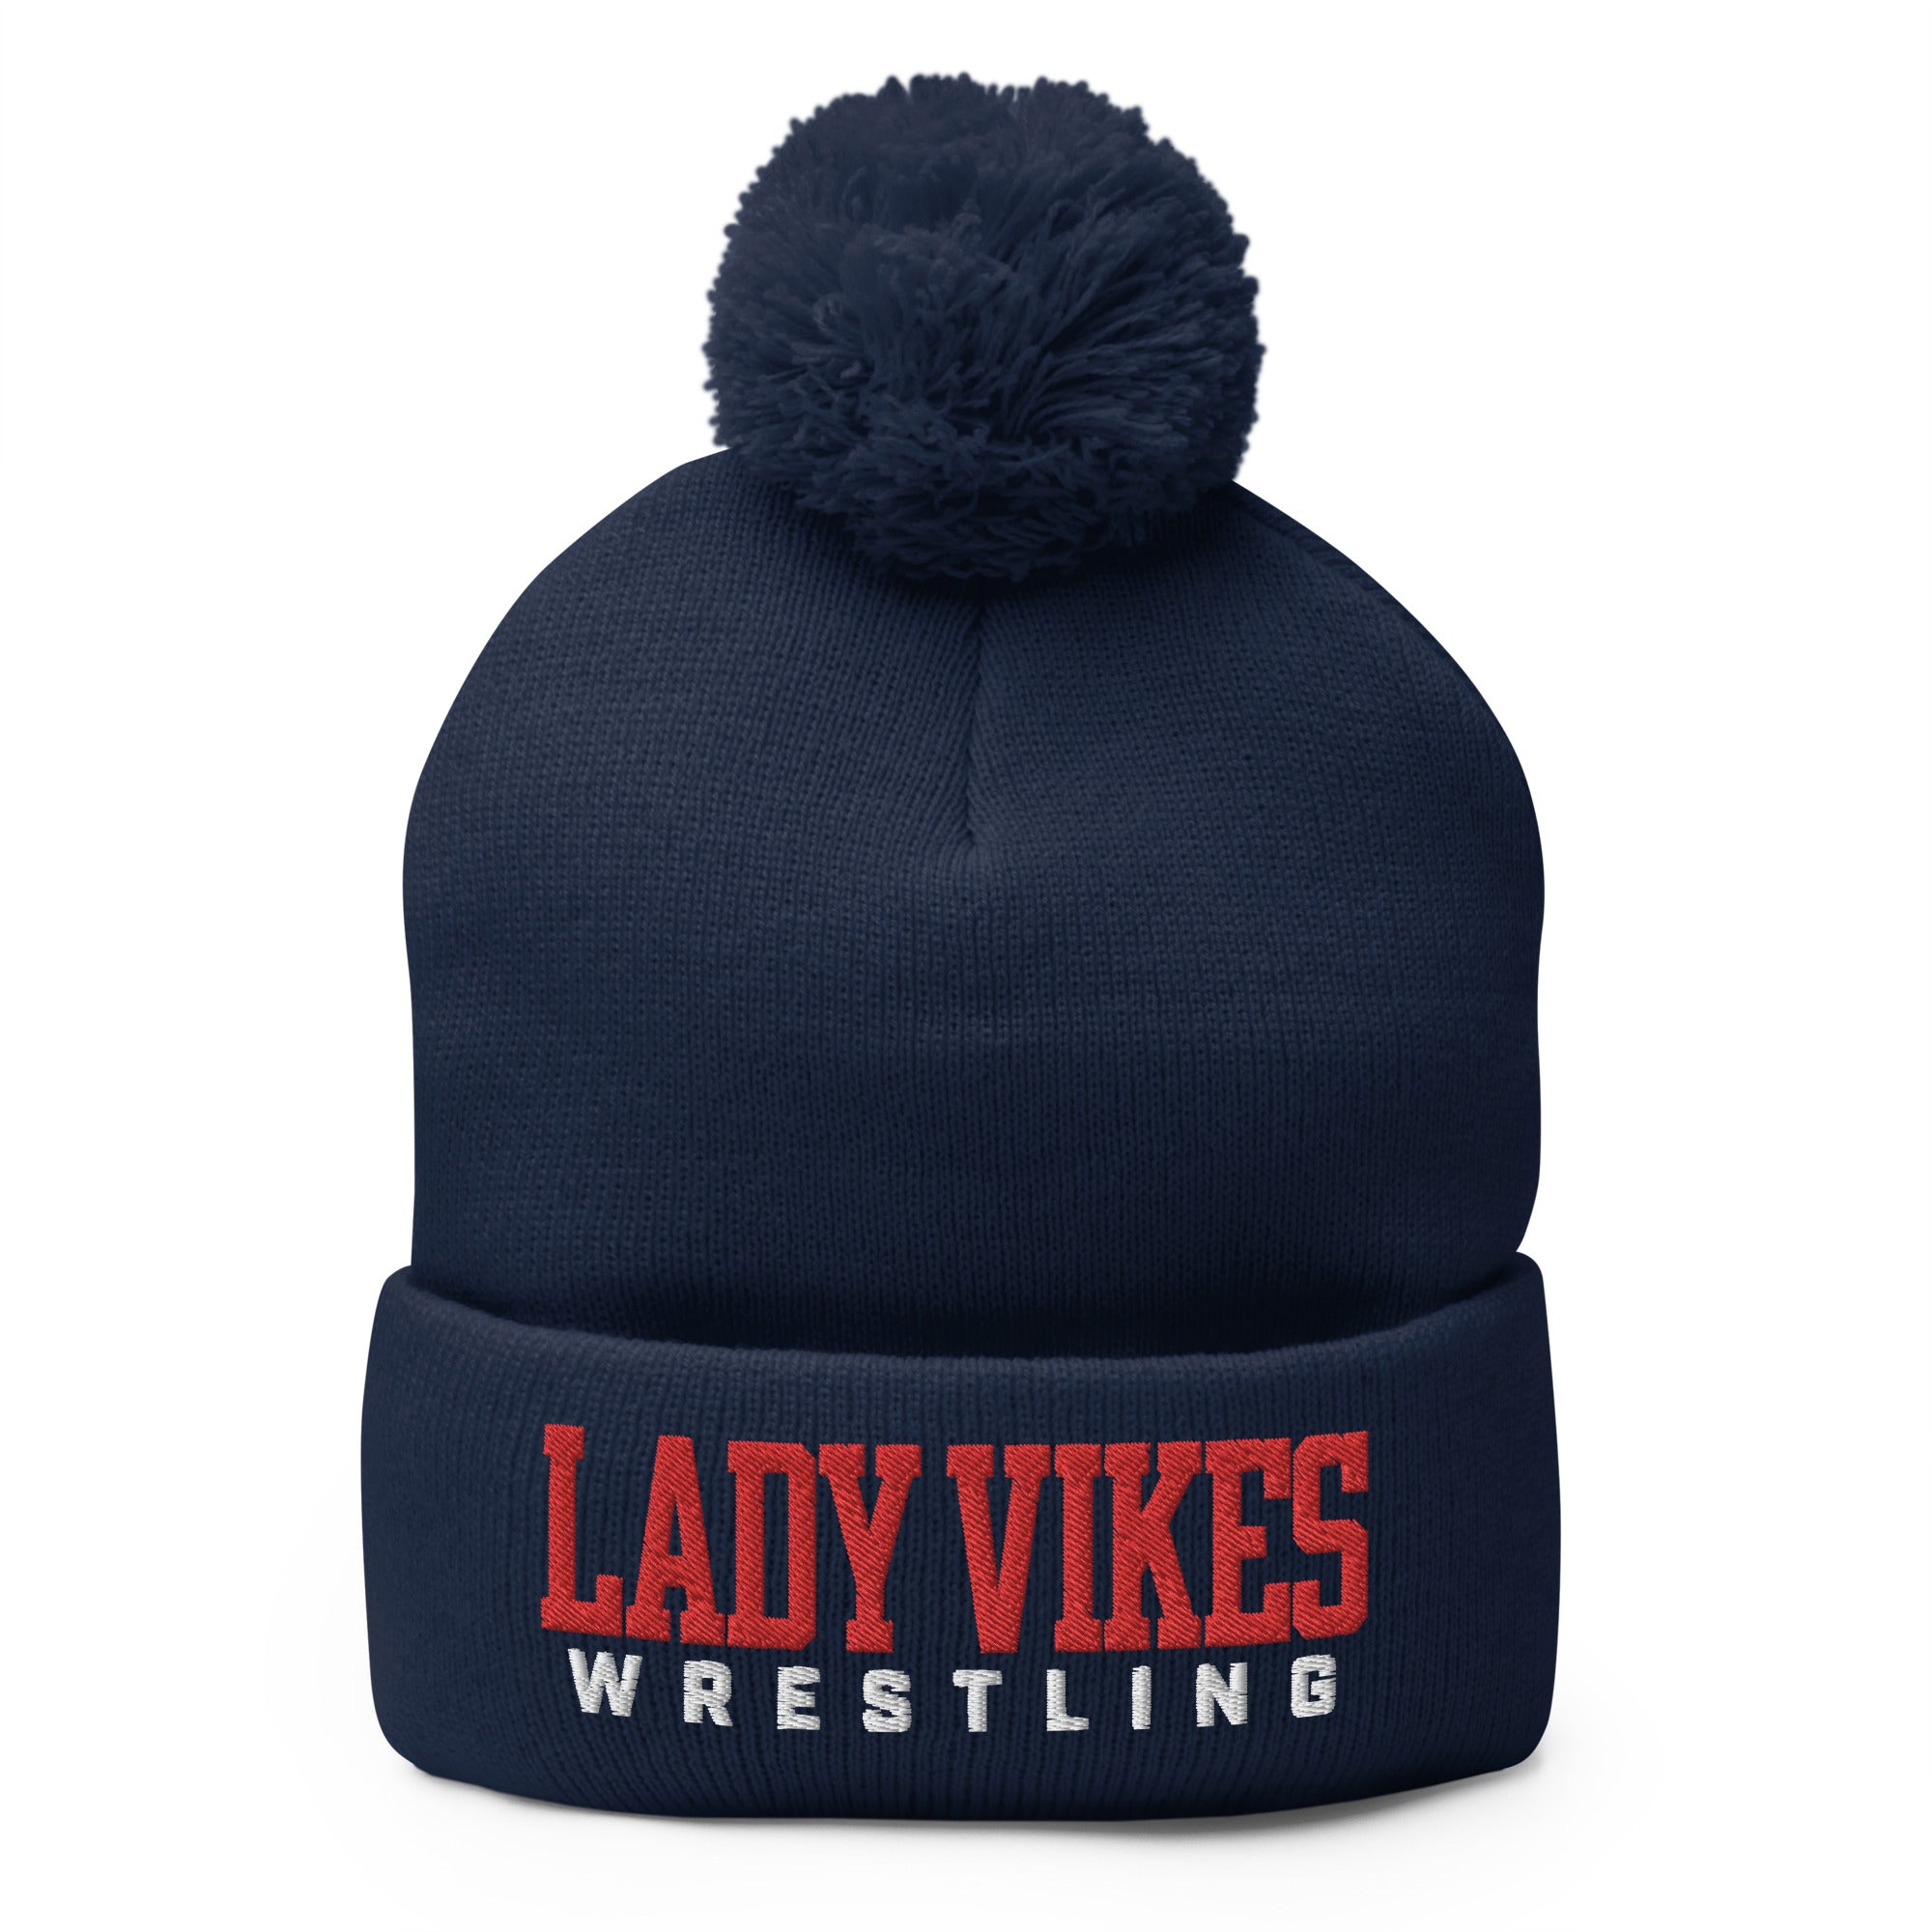 Lady Vikes Wrestling Pom-Pom Knit Cap